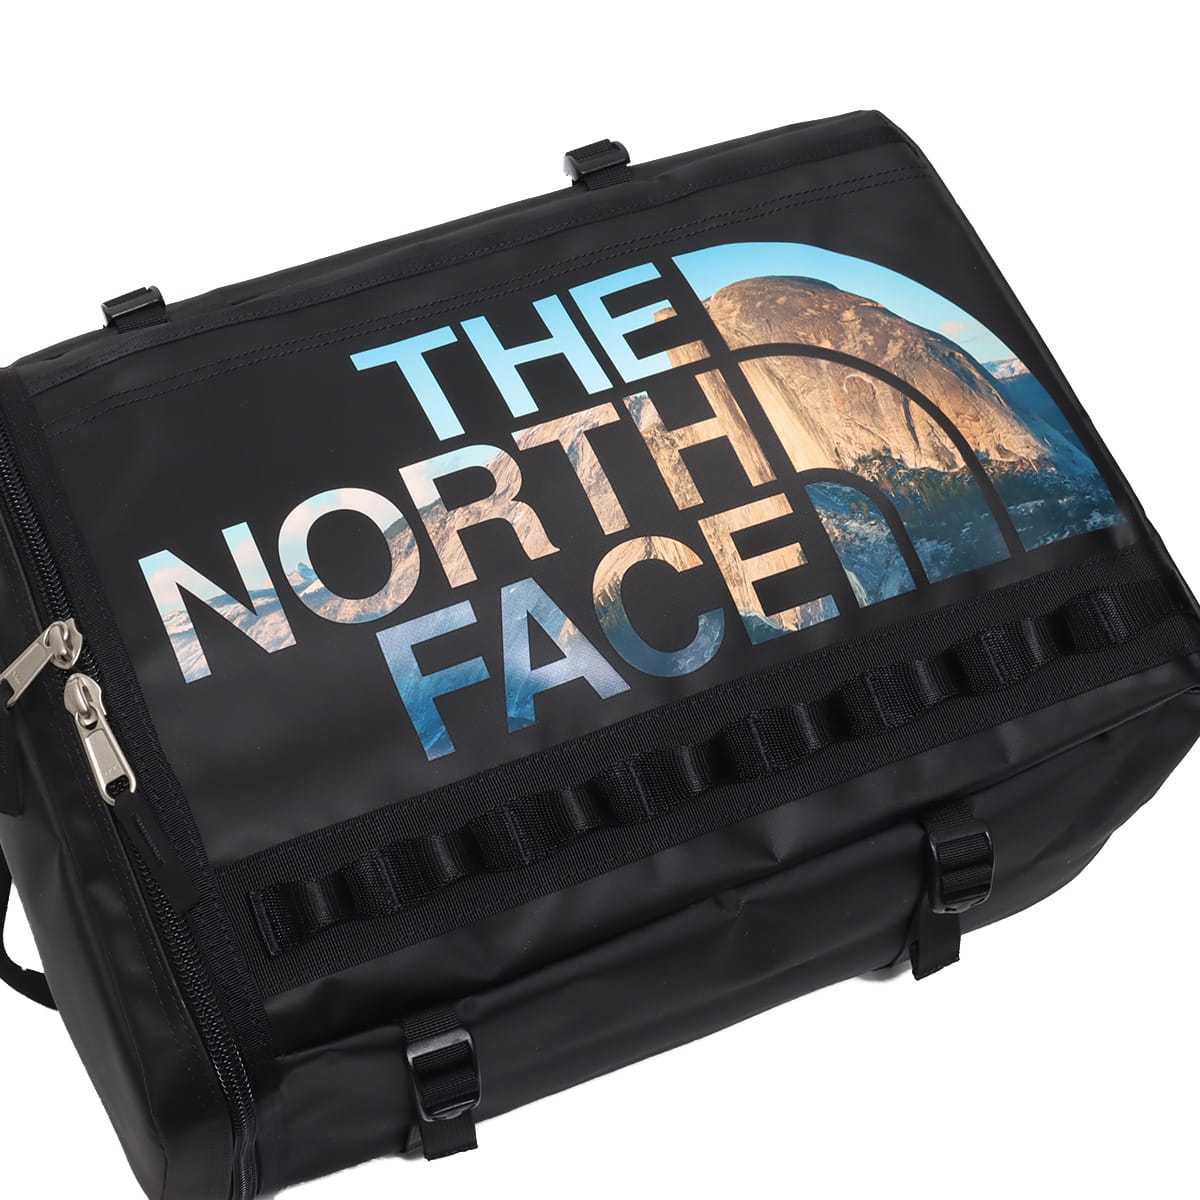 THE NORTH FACE NOVELTY BC FUSE BOX YOSEMITE PRINT2 22SS-I